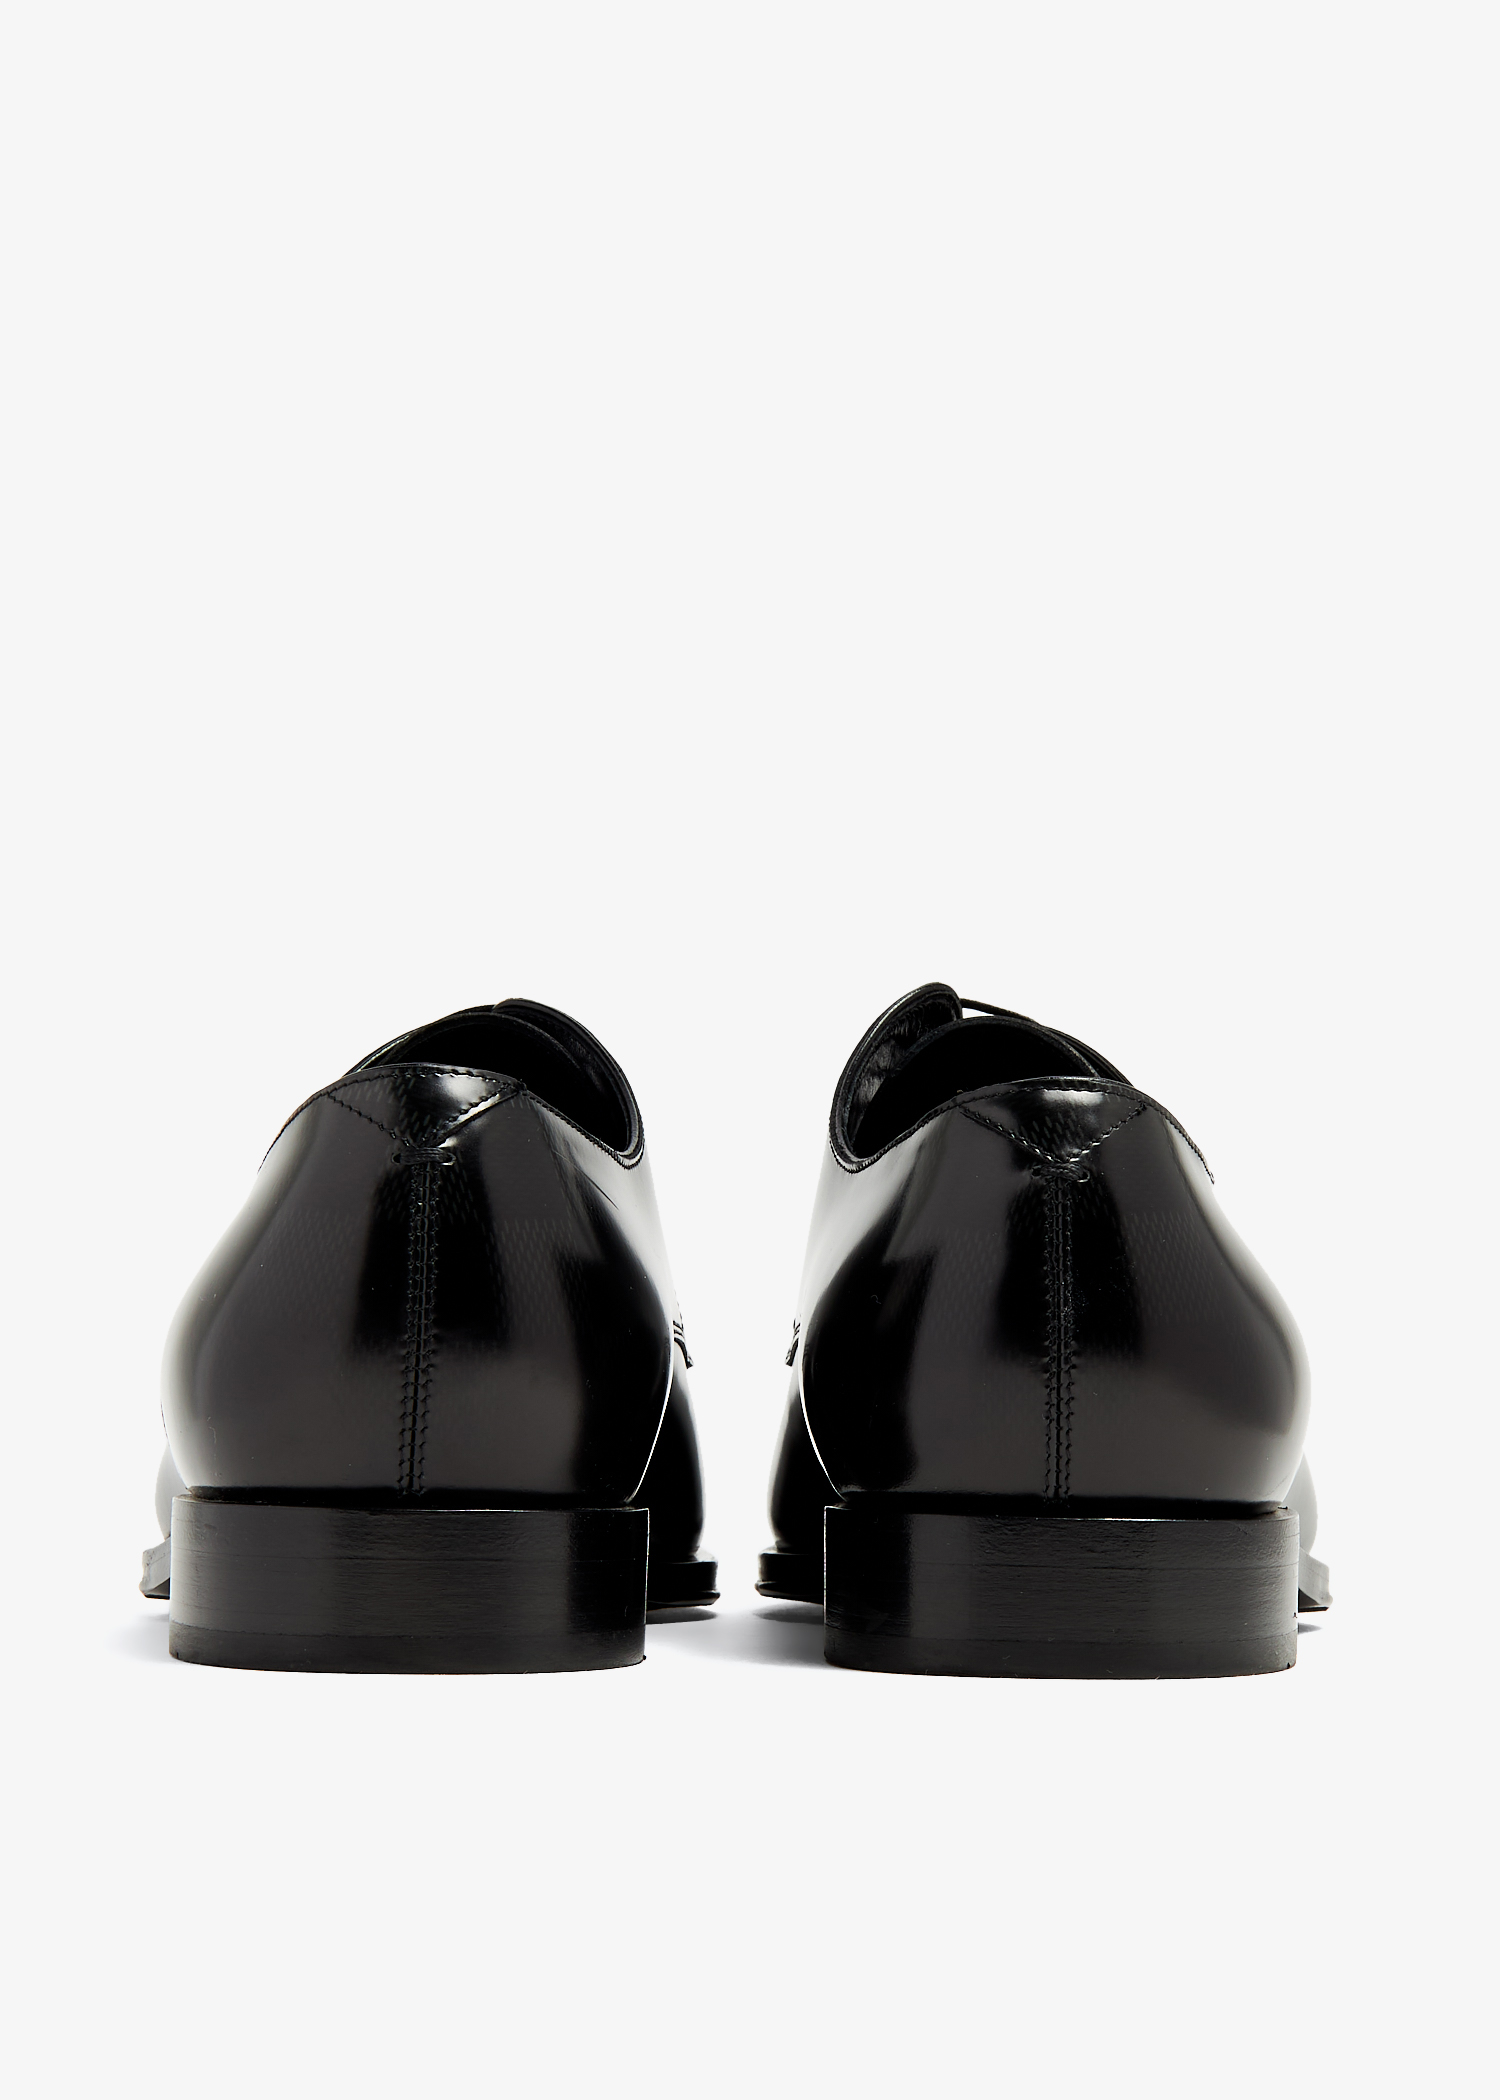 Louis Vuitton Minister Derby Men's Black Shoes Size 9.5. Fits Sizes  9-10